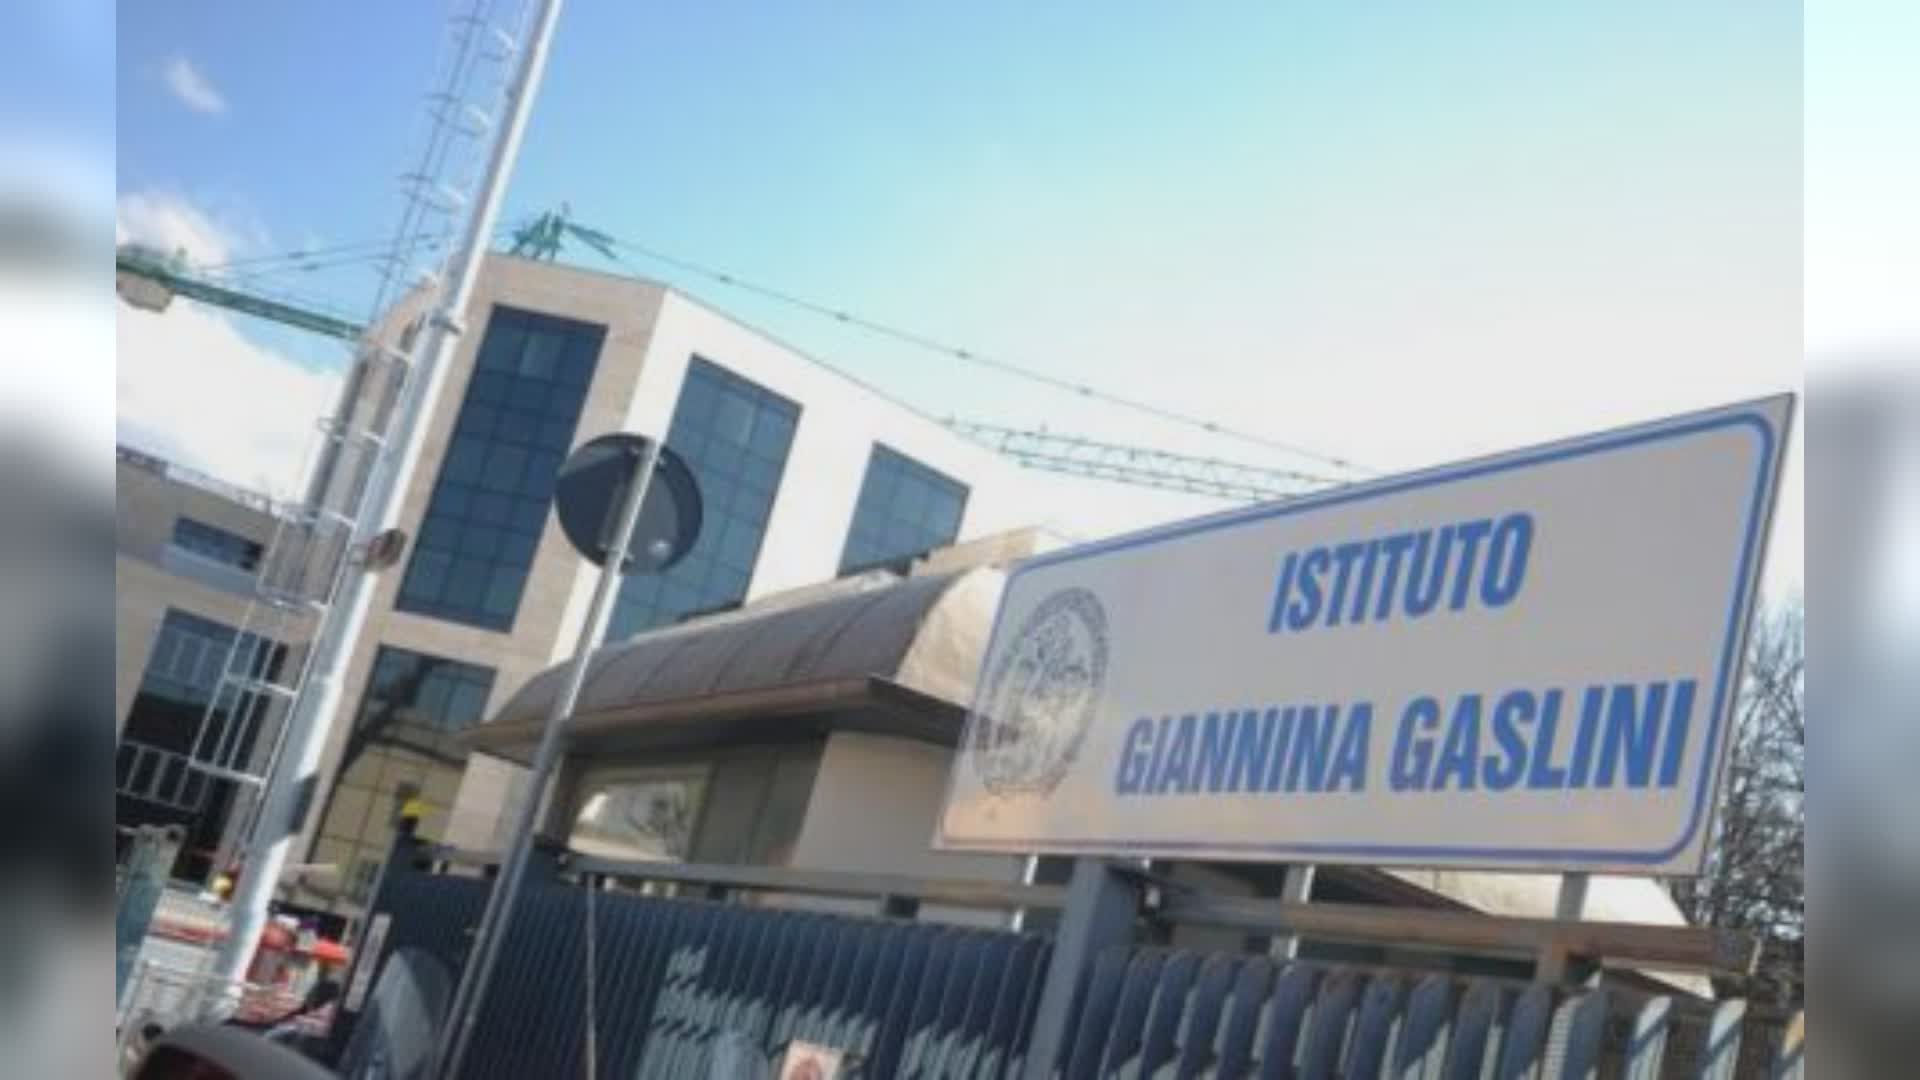 Genova, sanità: al Gaslini 46 nuovi assunti, sono 149 da inizio anno